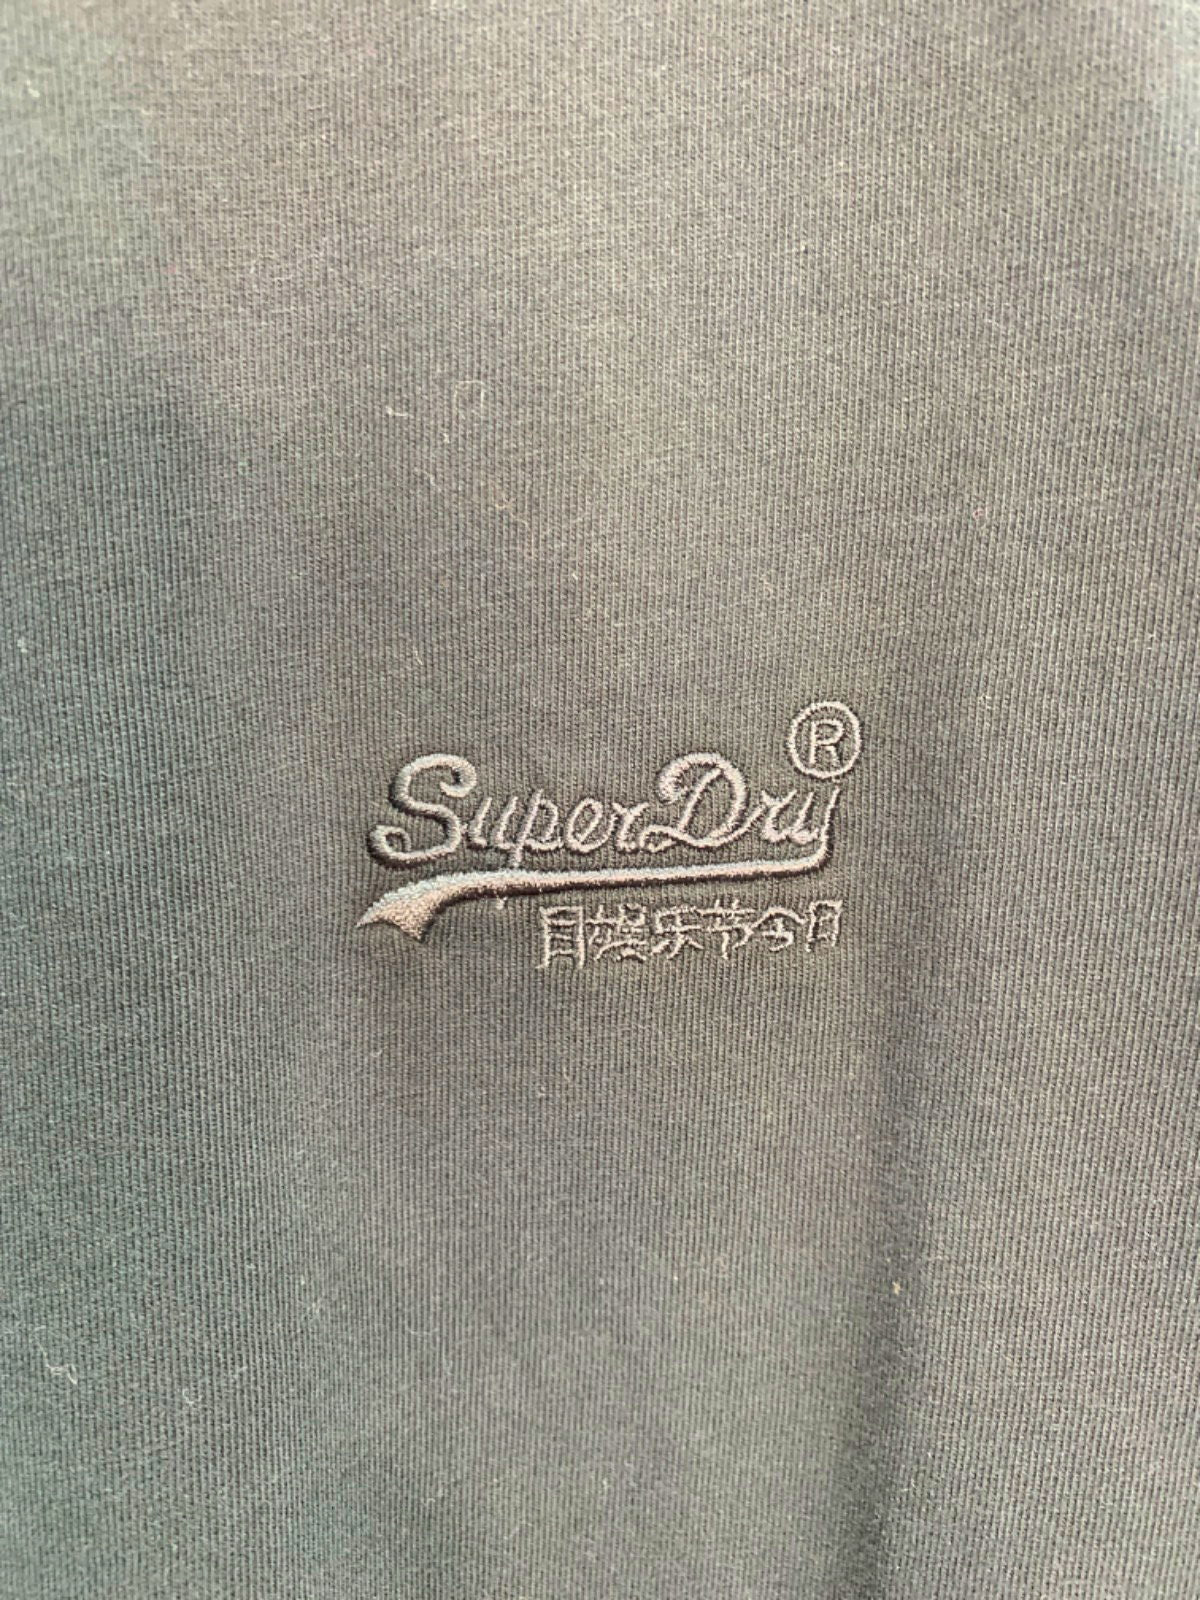 Superdry Black Vintage Logo Embroidered Tee SZ L